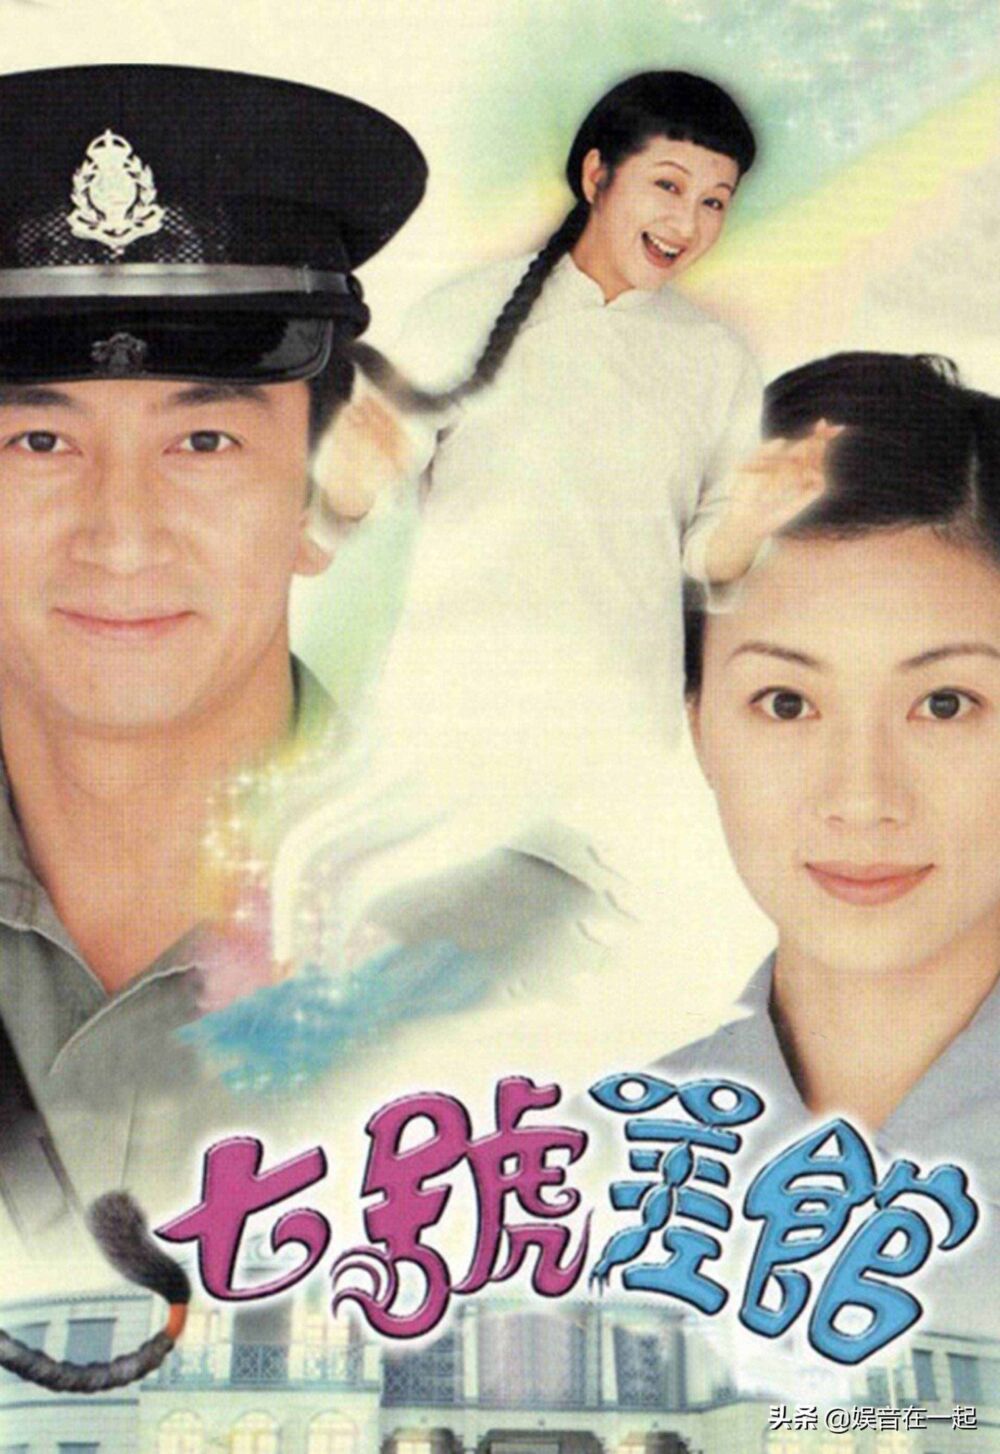 盘点十大TVB经典鬼剧 其中一部最高收视达45点